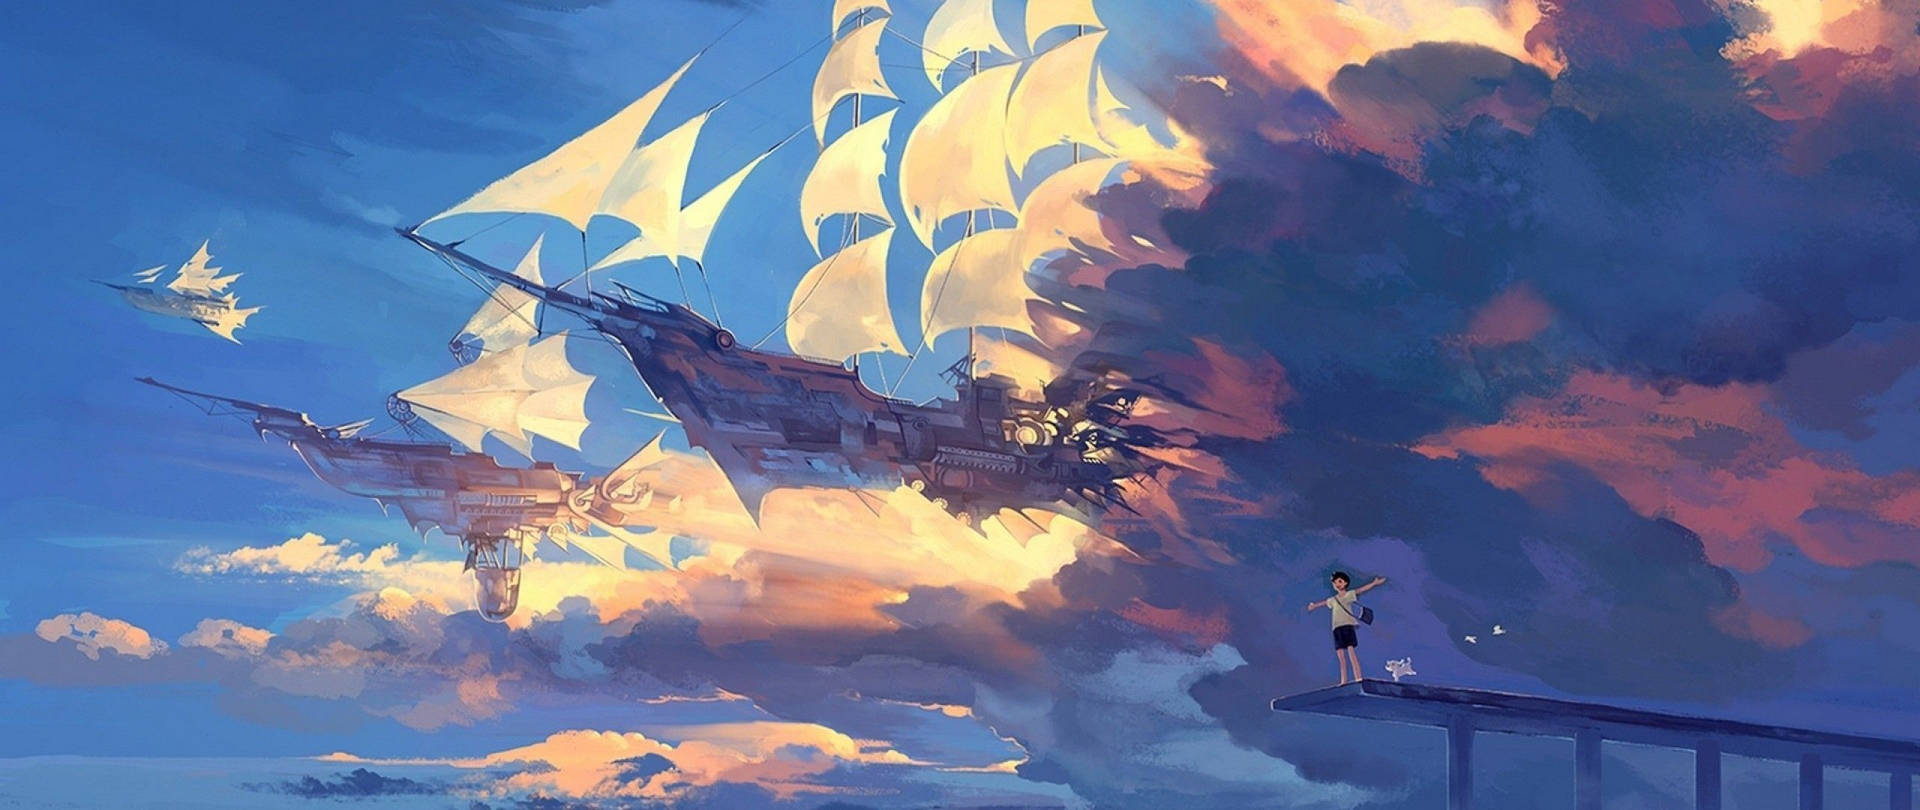 Blue Anime Galleon Ships Aesthetic Wallpaper